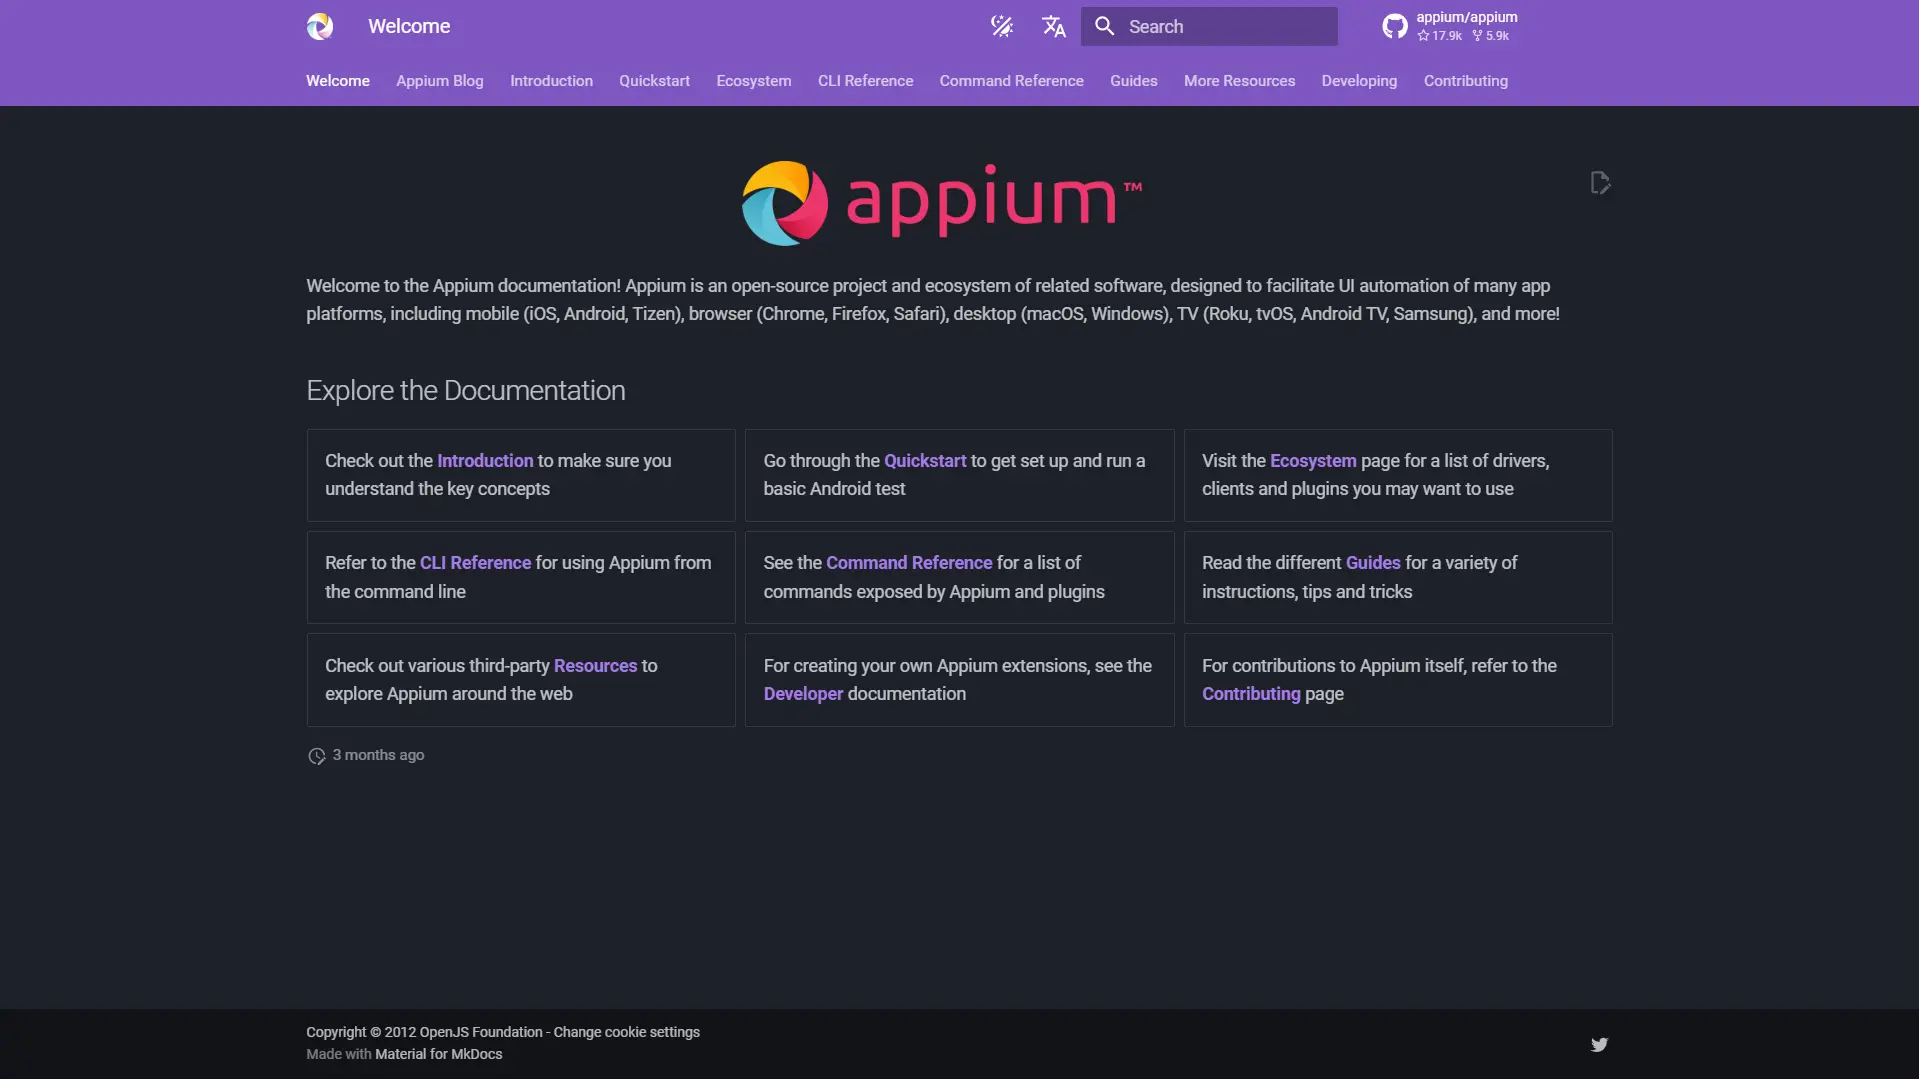 Appium website homepage.